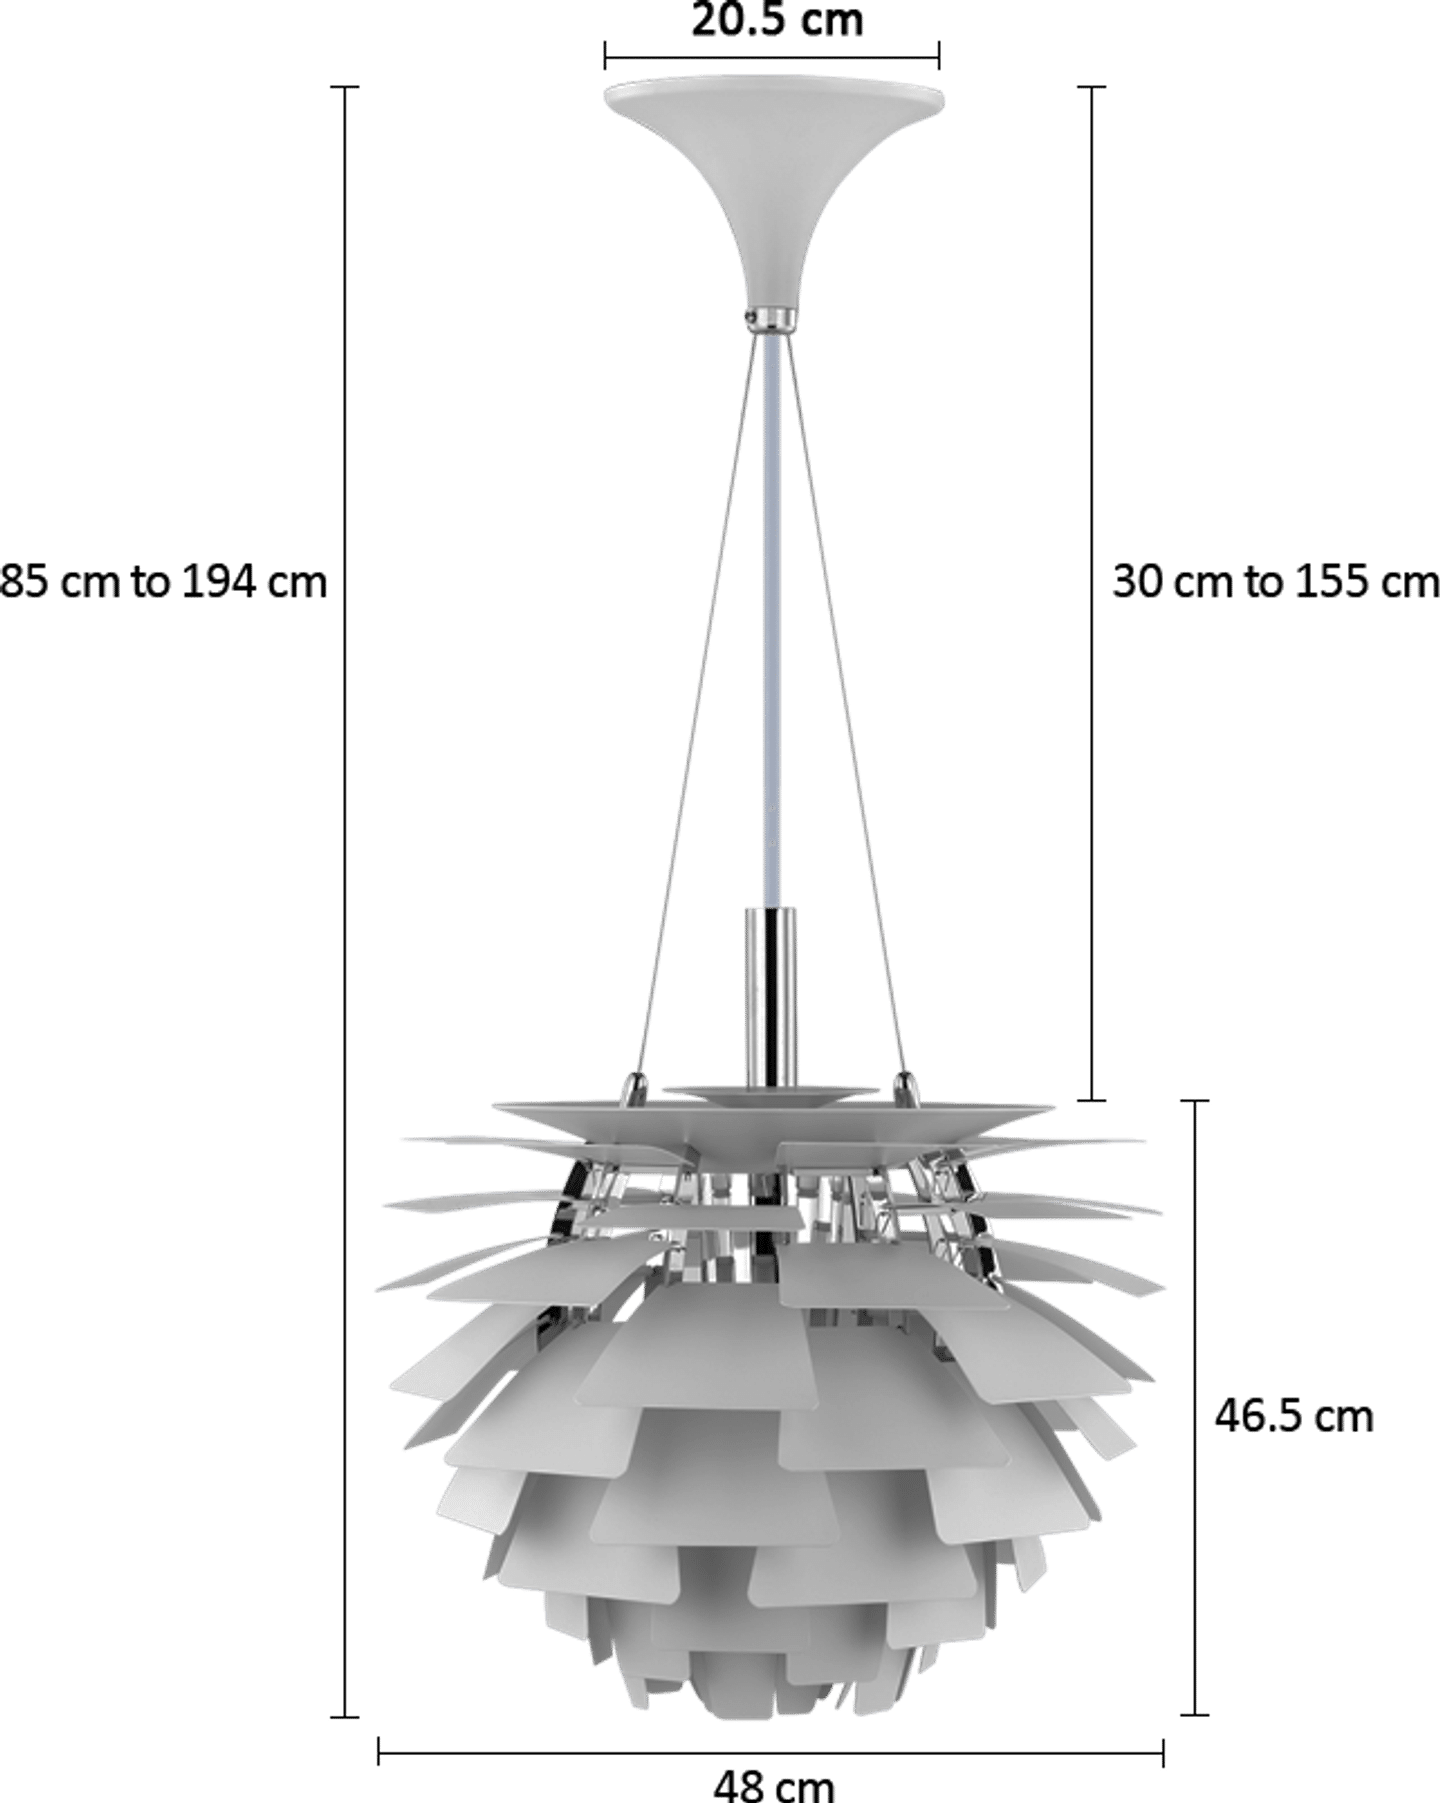 Artischocken-Lampe Copper/48 CM image.